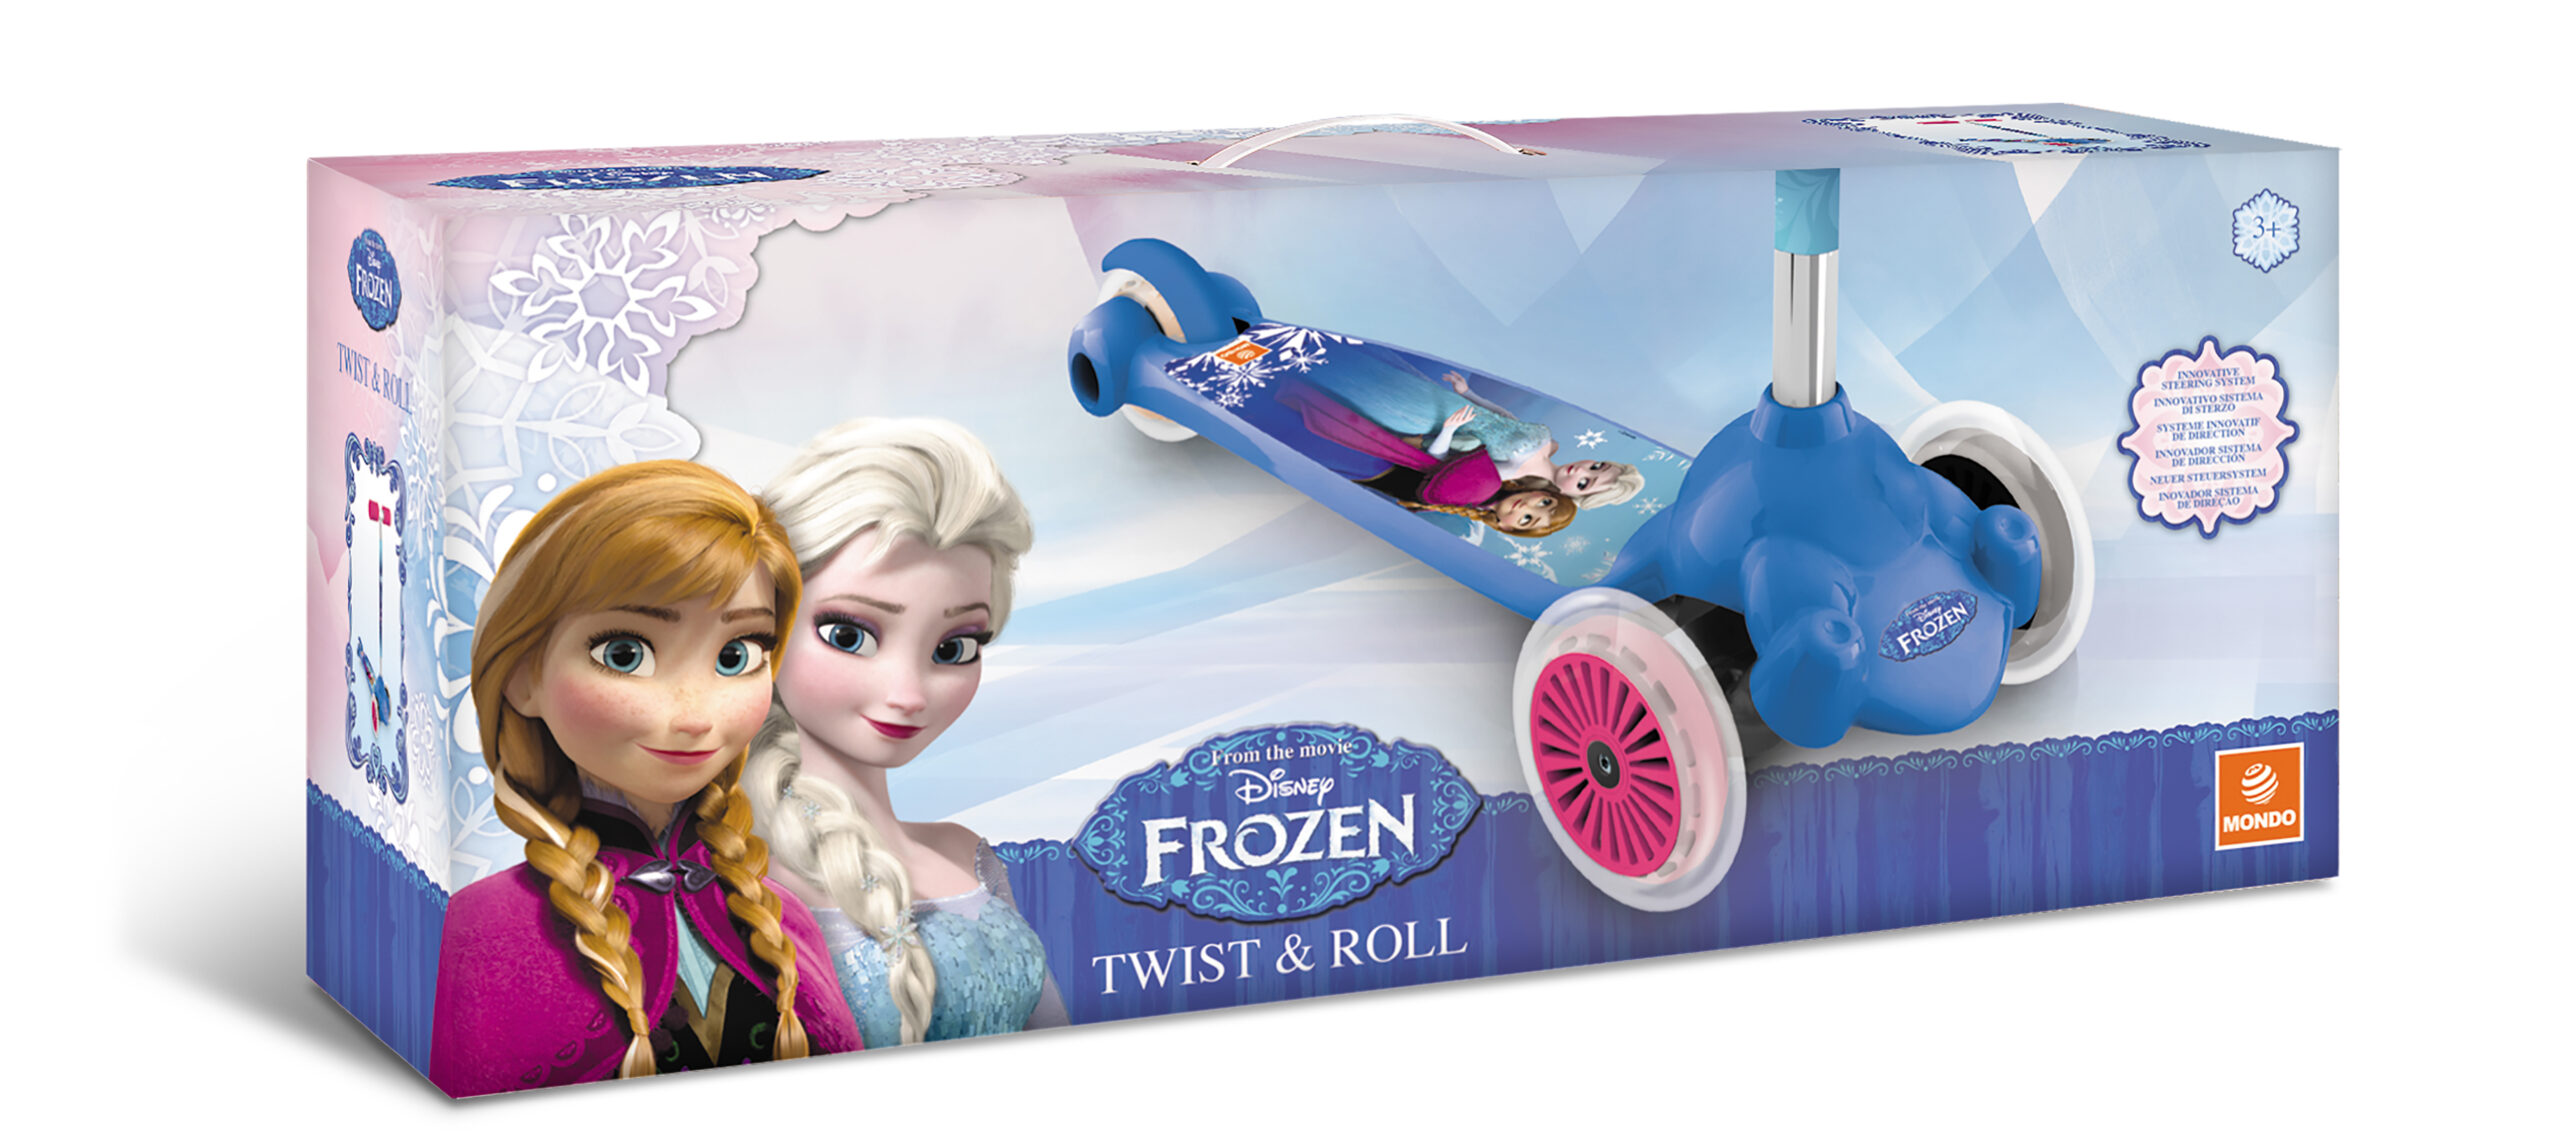 Twist & roll frozen - Disney